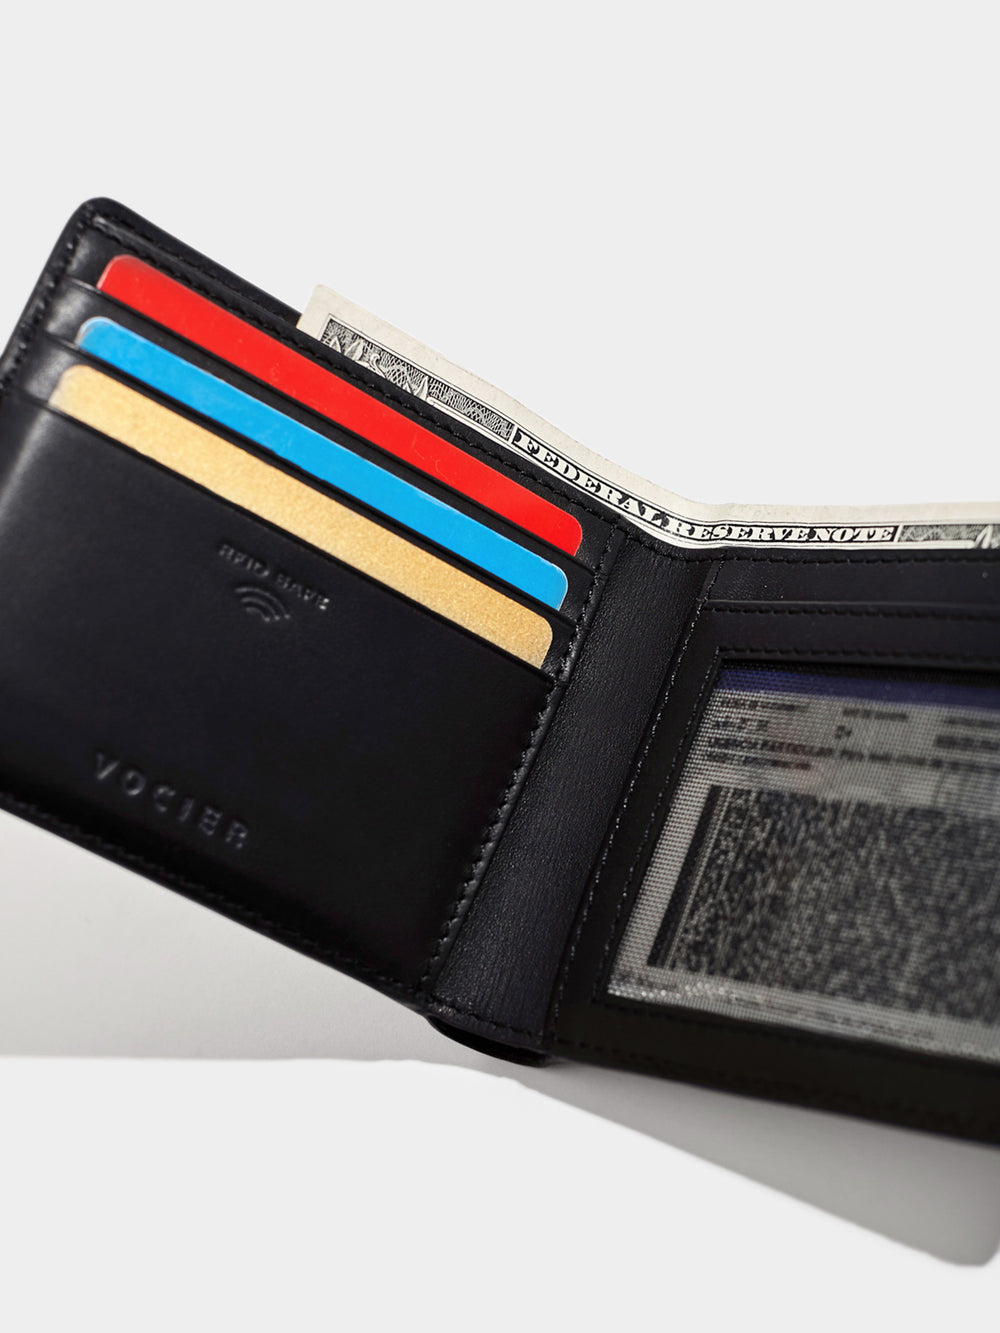 Best reviews of 🎉 Blvck Paris Classic Fold Wallet ✨